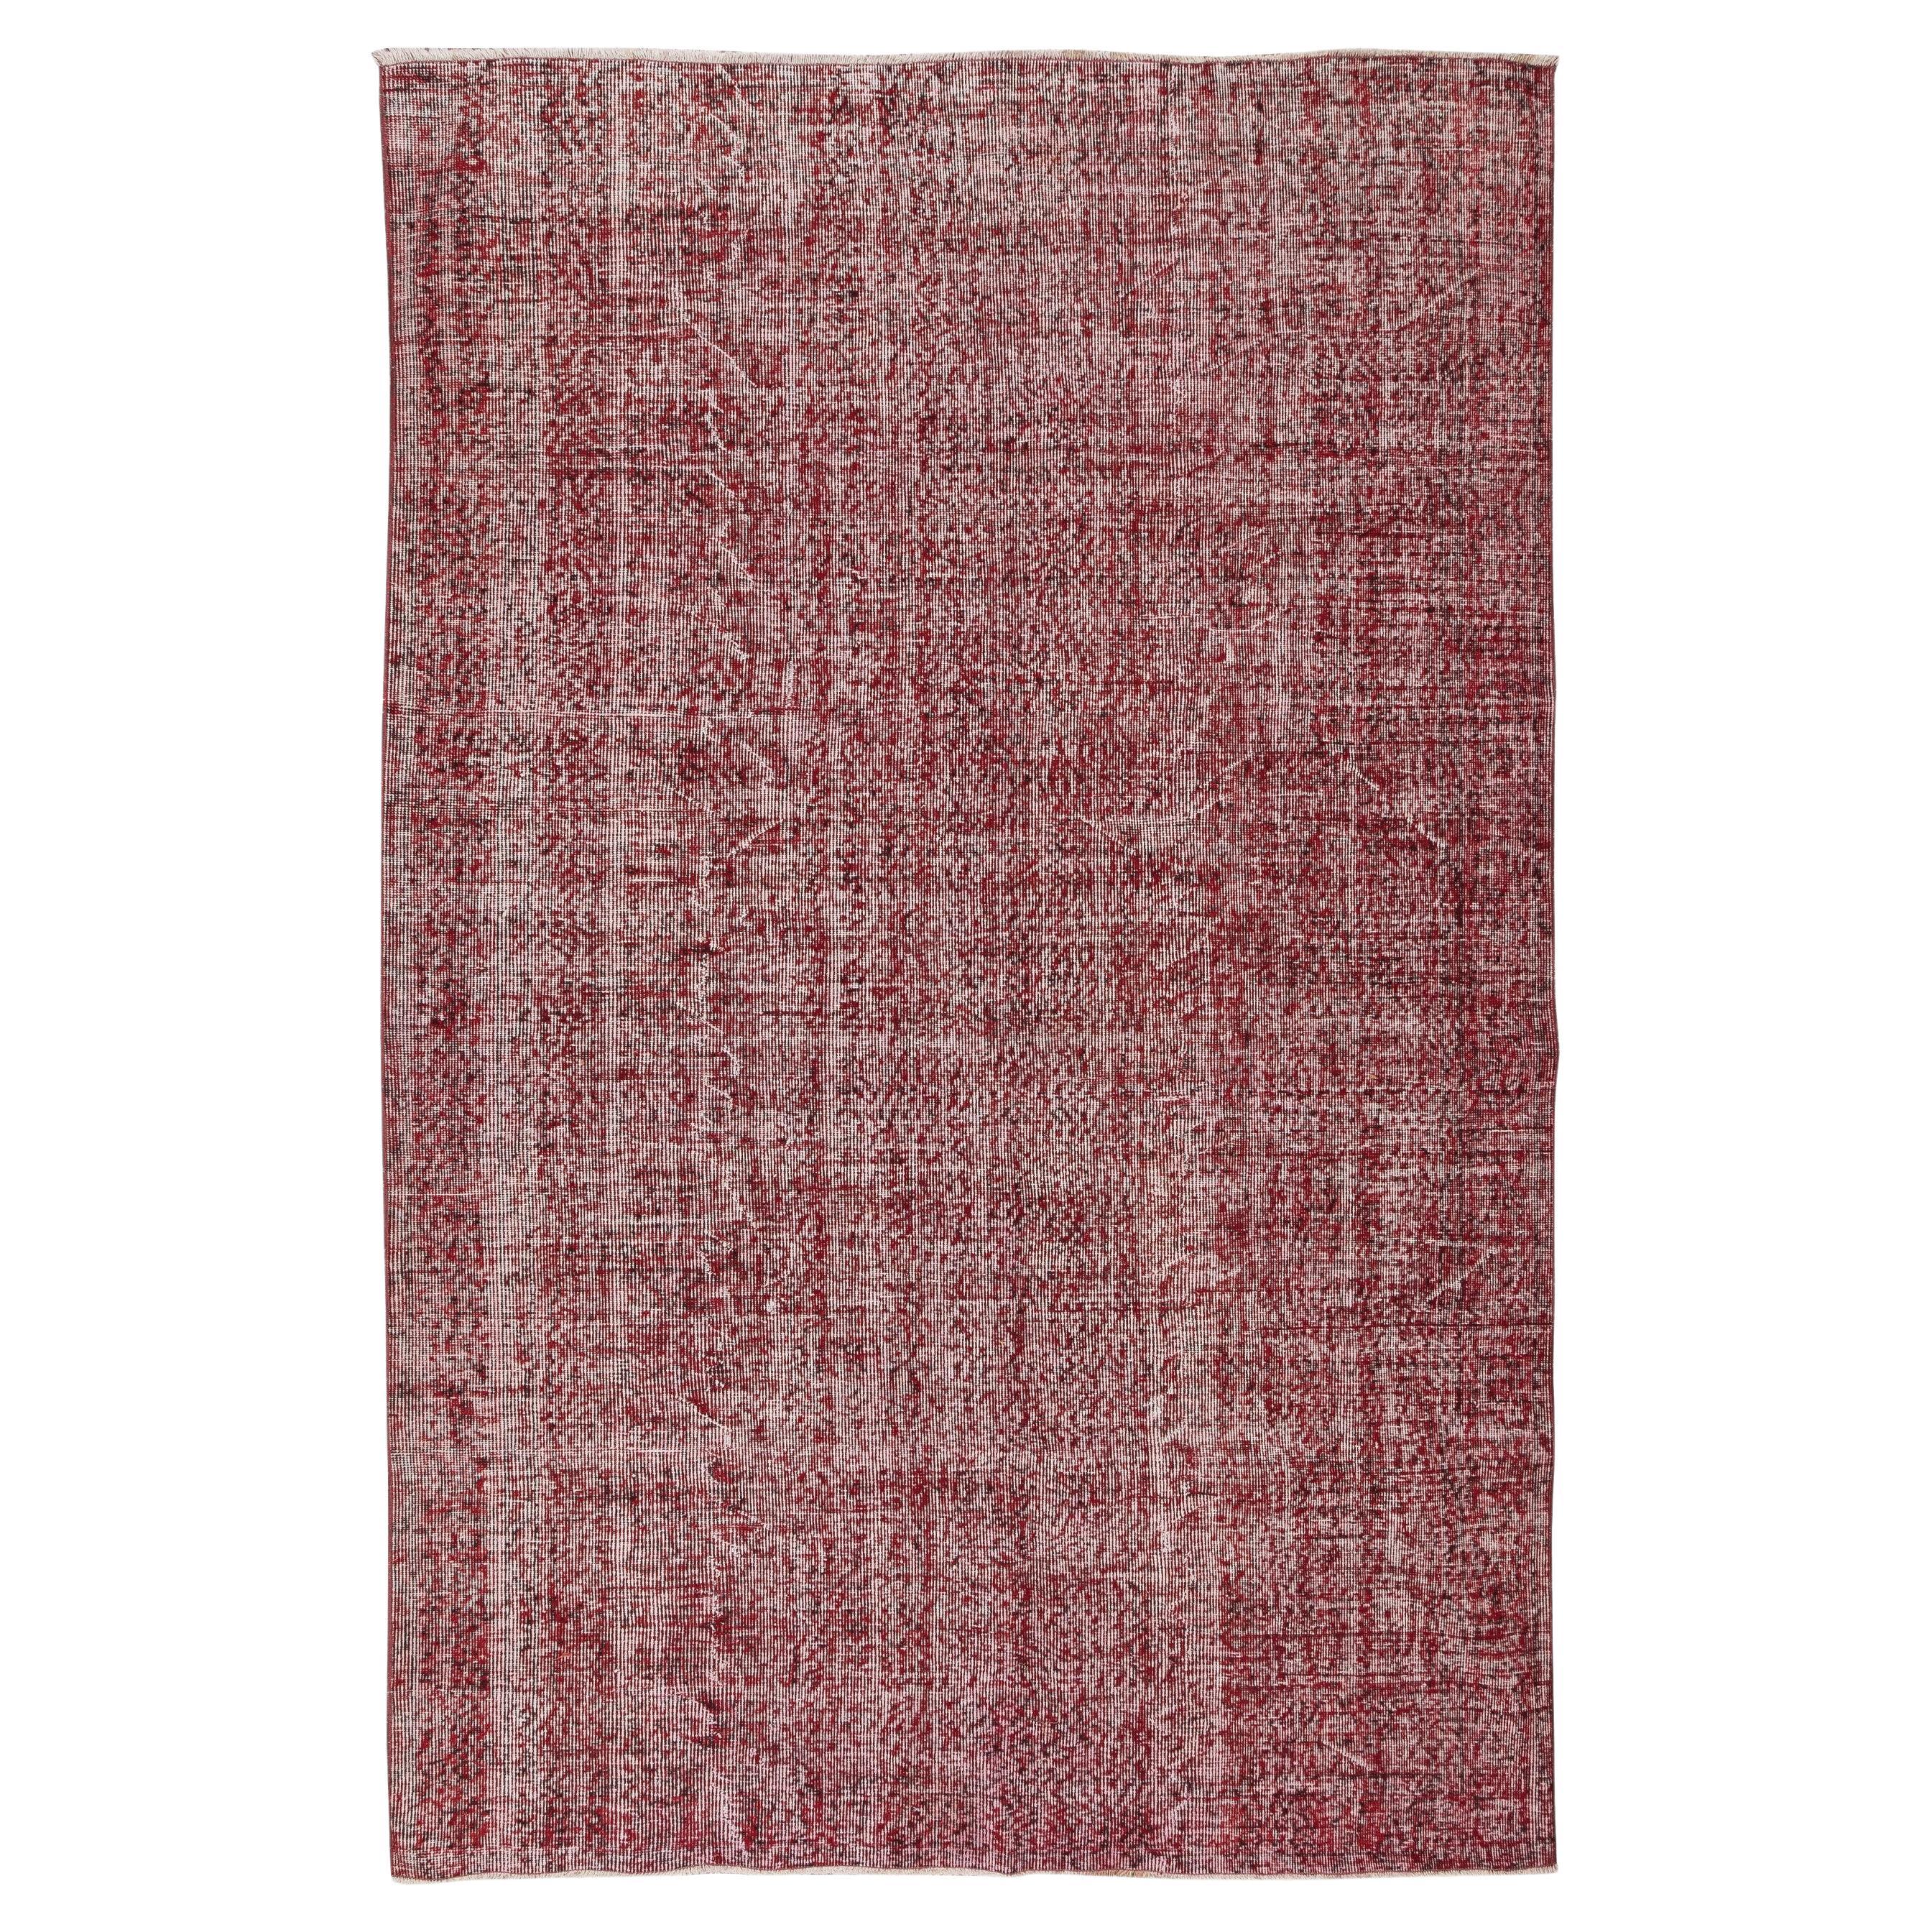 6,4x9.6 Ft handgefertigter türkischer Vintage-Teppich aus Wolle im Used-Look in Burgunderrot